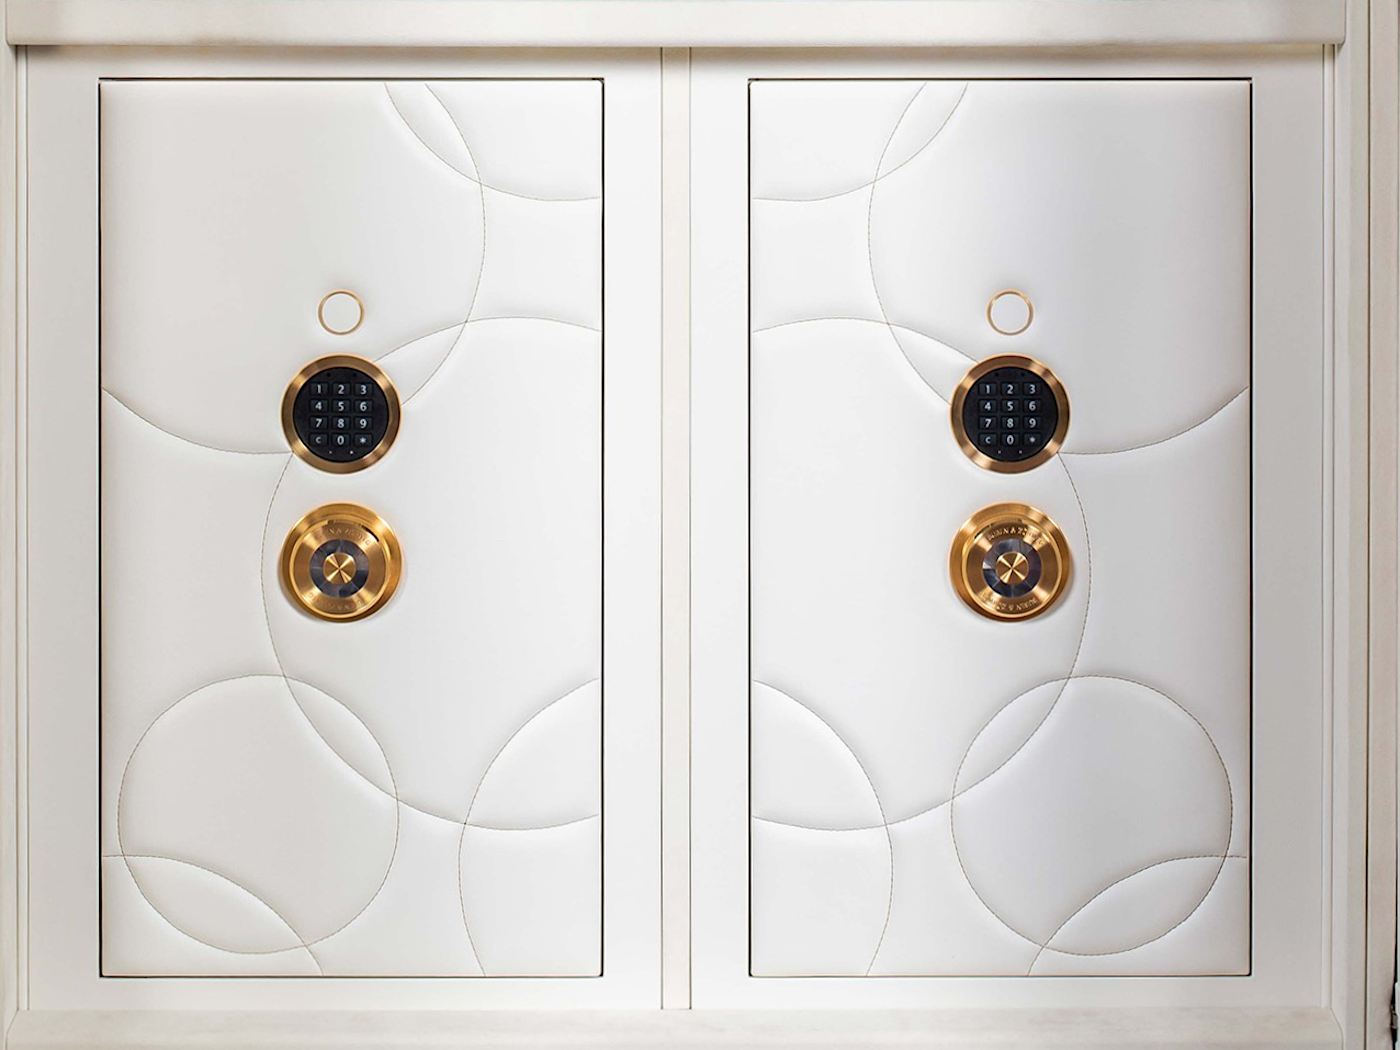 Zwei High-Security Safes mit Circle-Design  — BUBEN&ZORWEG